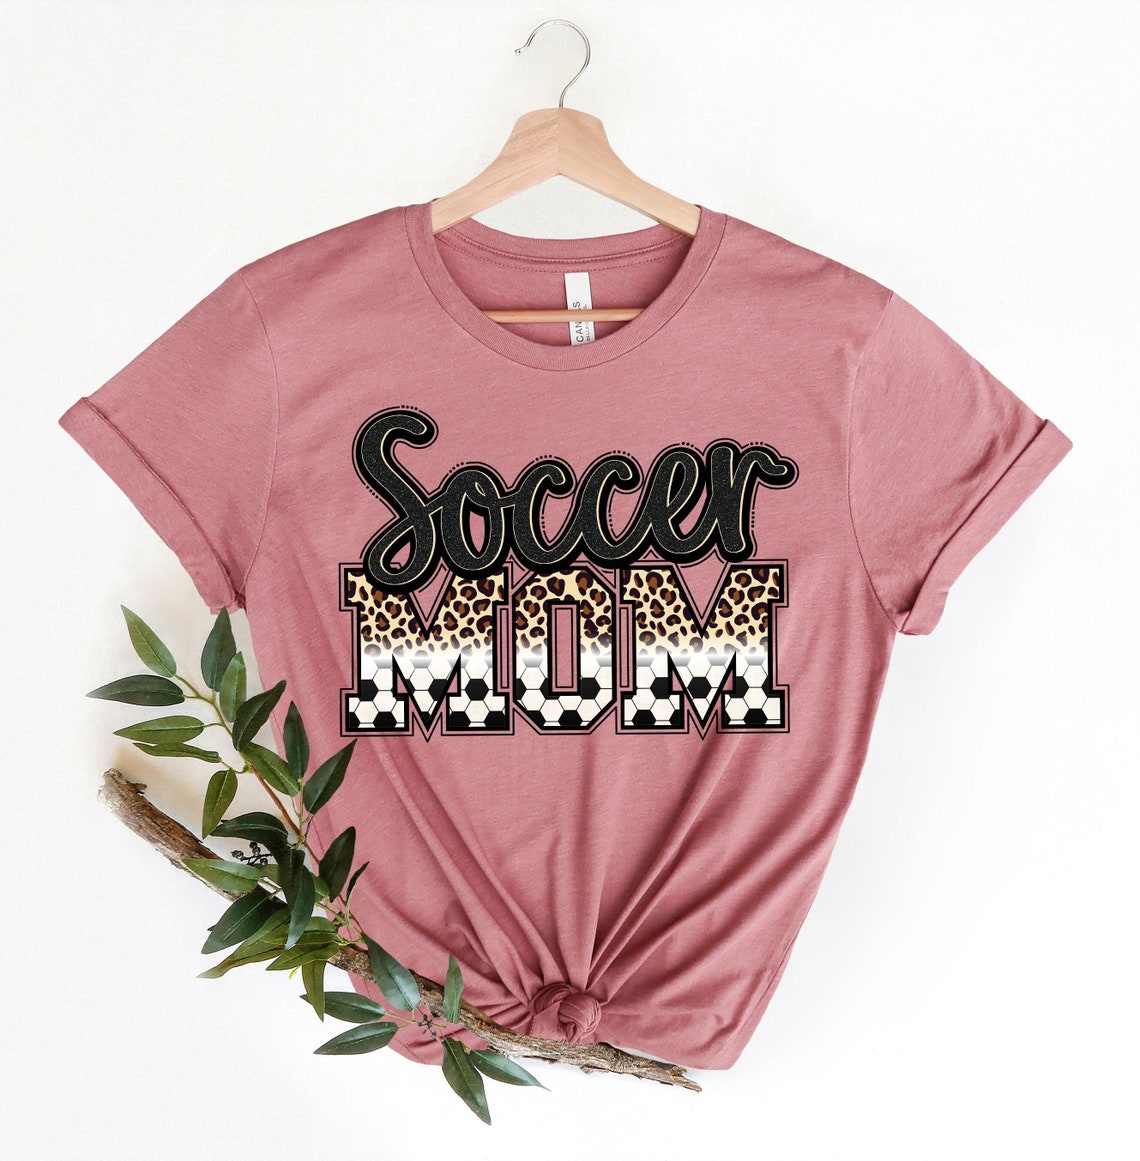 Soccer Mom Shirt for Mom - Soccer Mom T shirt